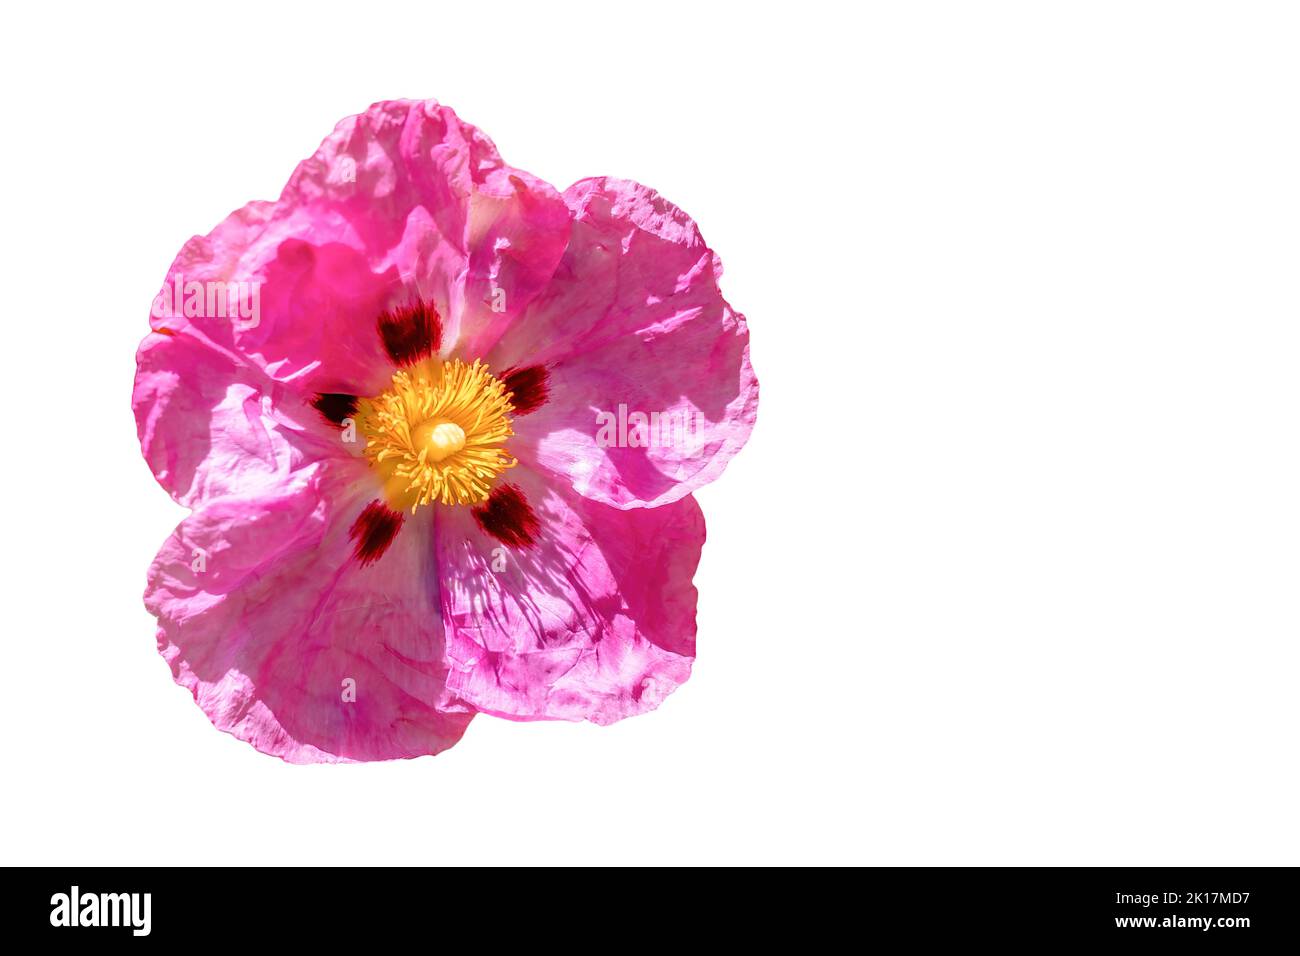 Il fiore di Cistus ladanifer rosa è una specie di pianta della famiglia delle Cistaceae. E' originaria della regione del Mediterraneo occidentale. Nomi comuni Foto Stock